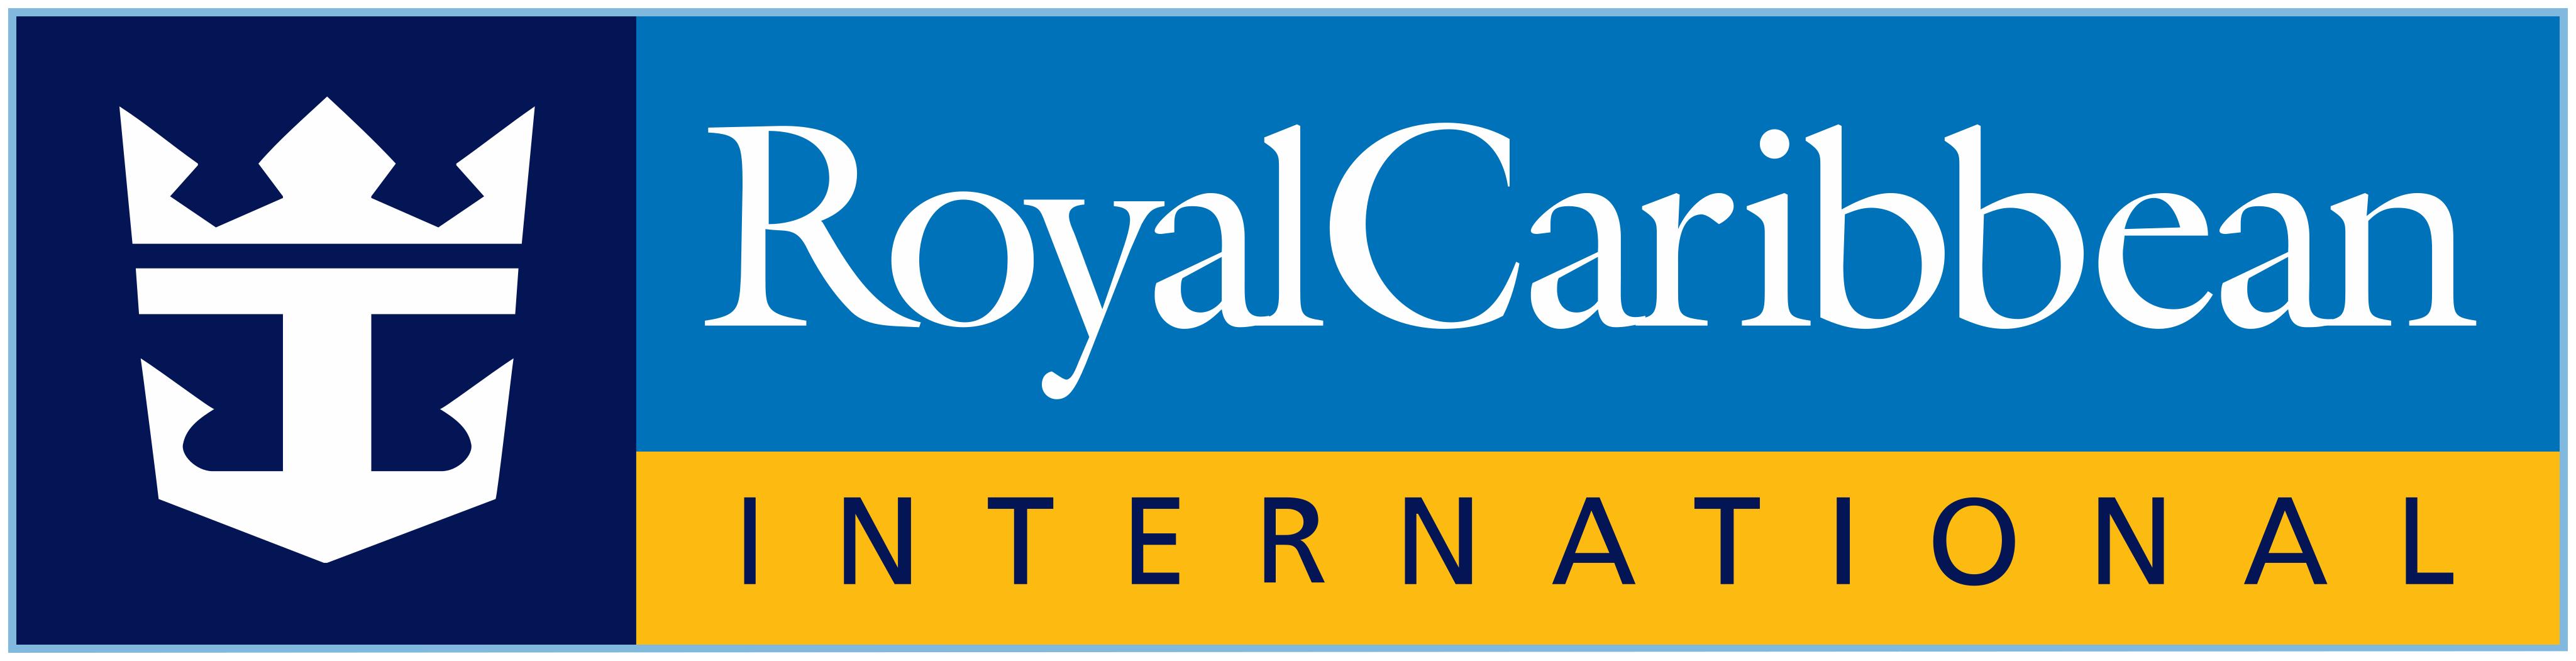 Royal Caribbean Logo - PNG and Vector - Logo Download